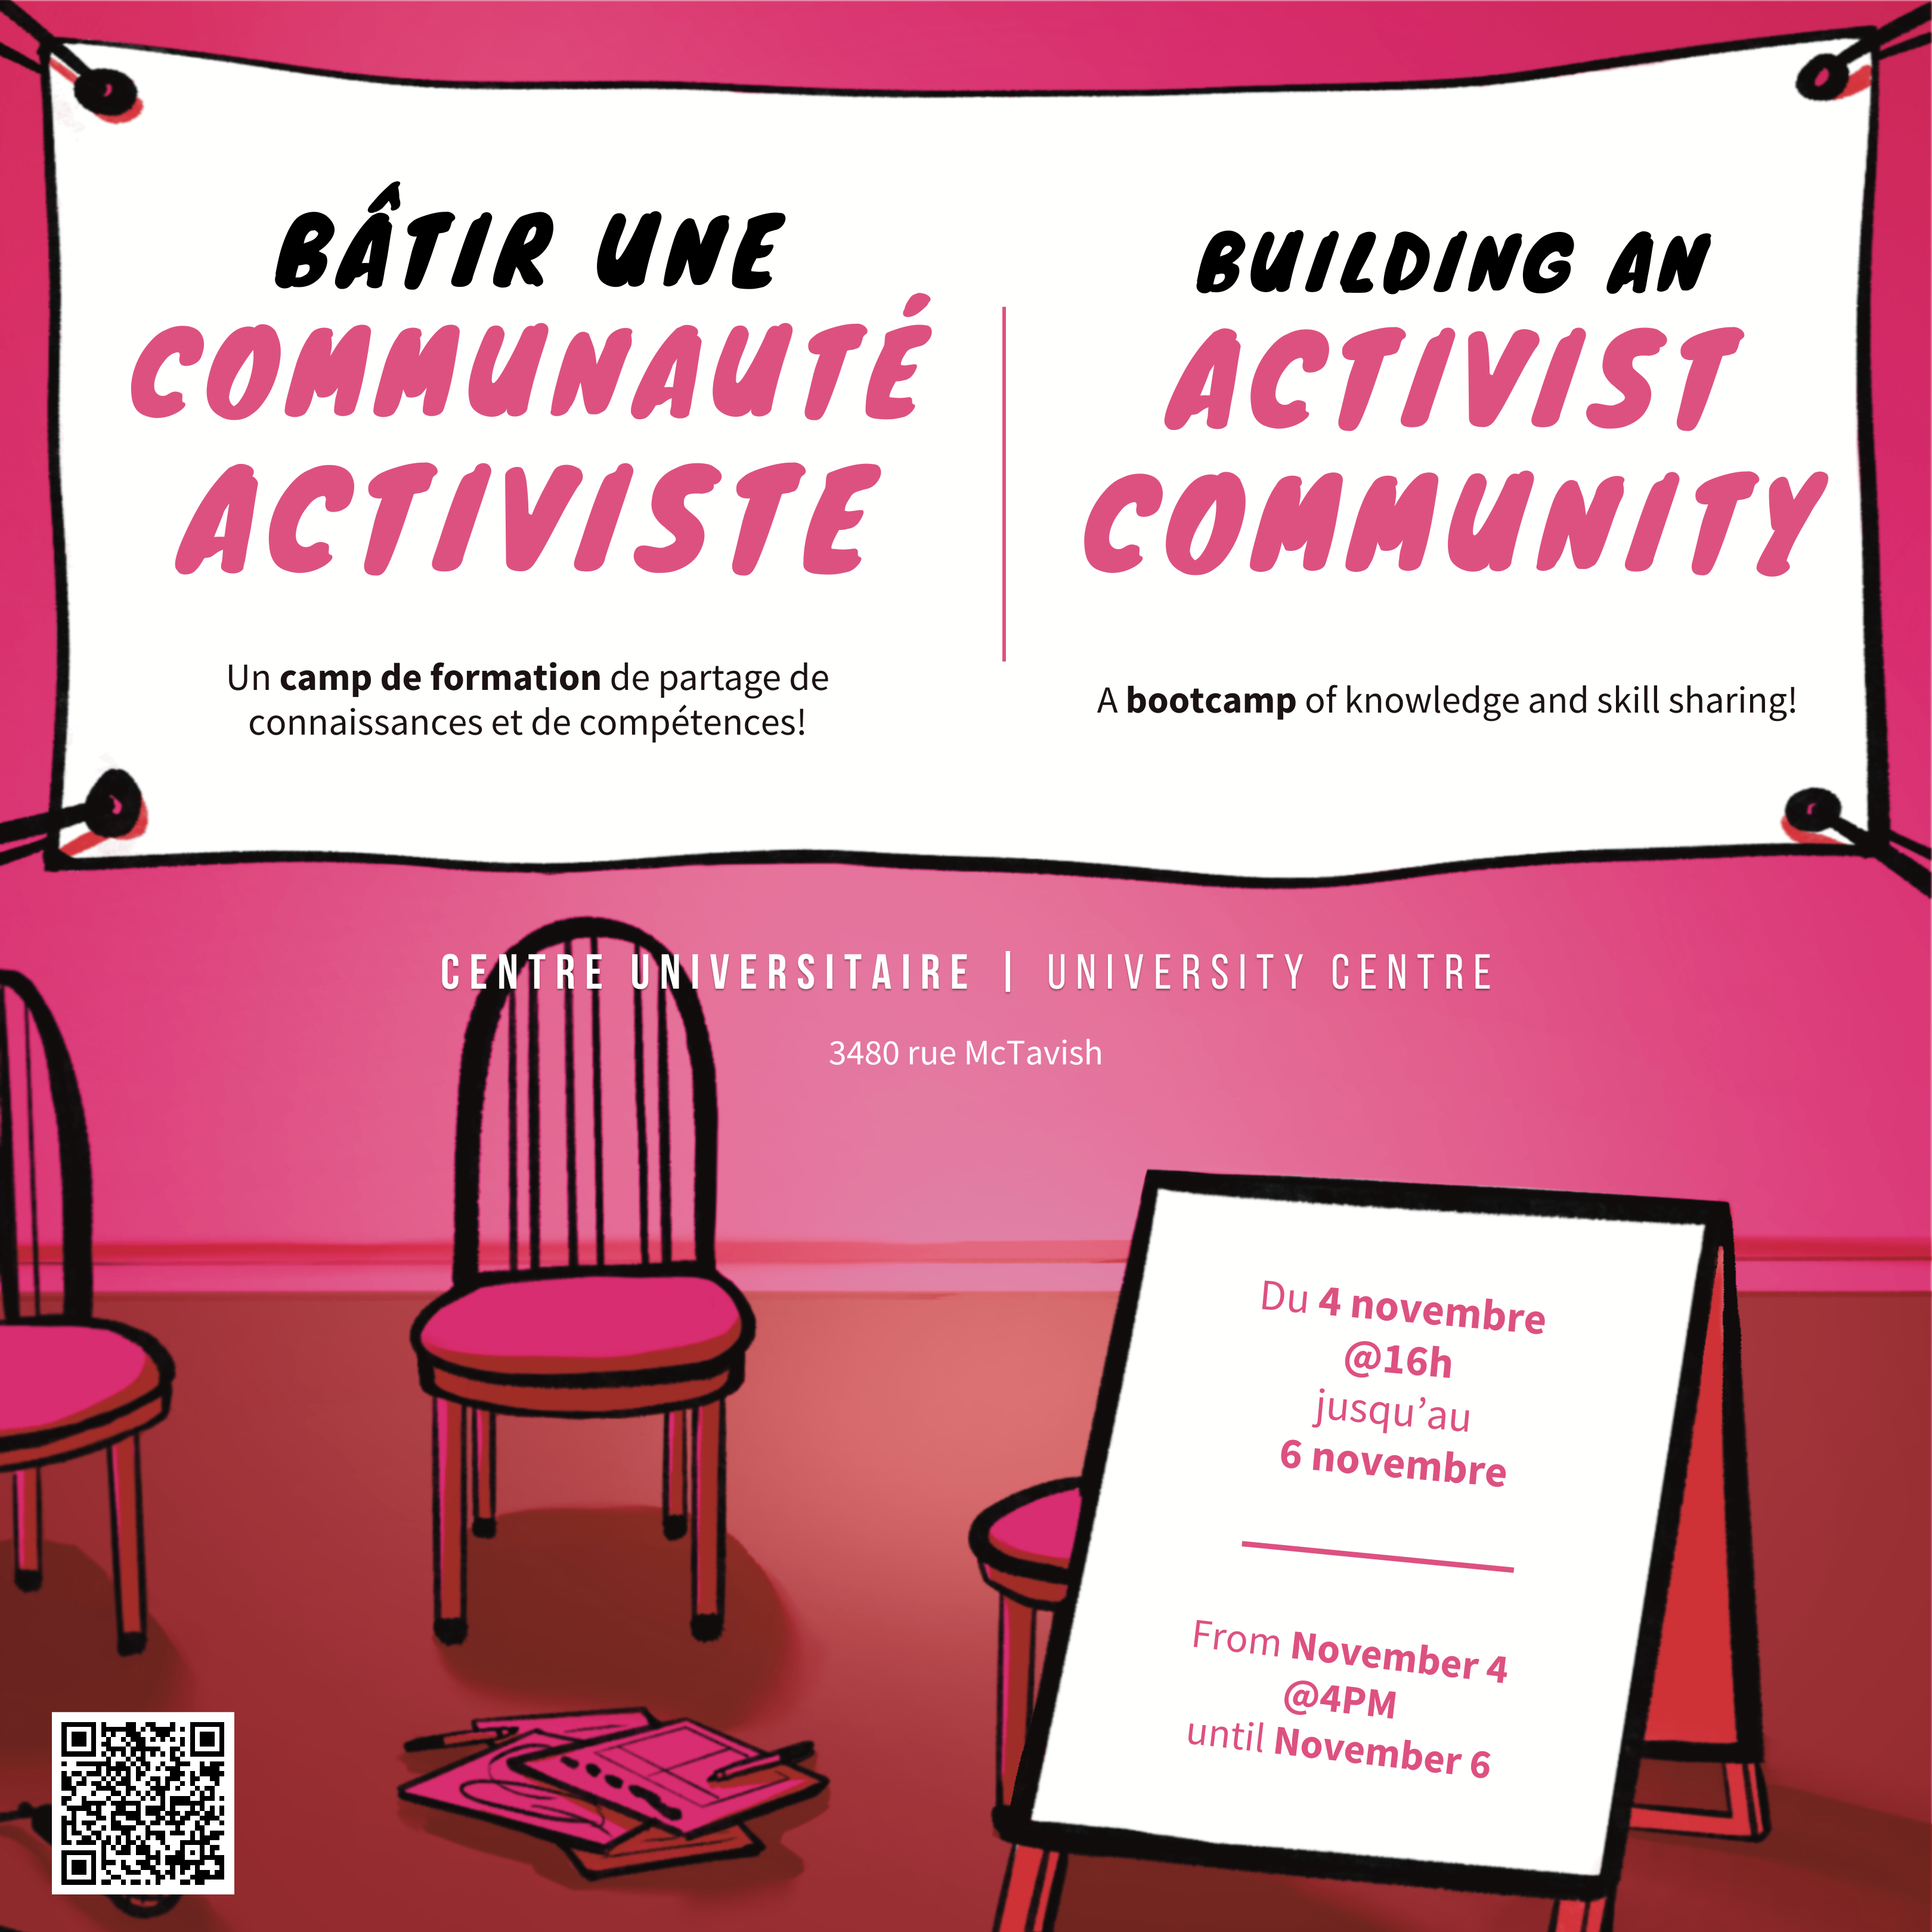 Bâtir une communauté activiste